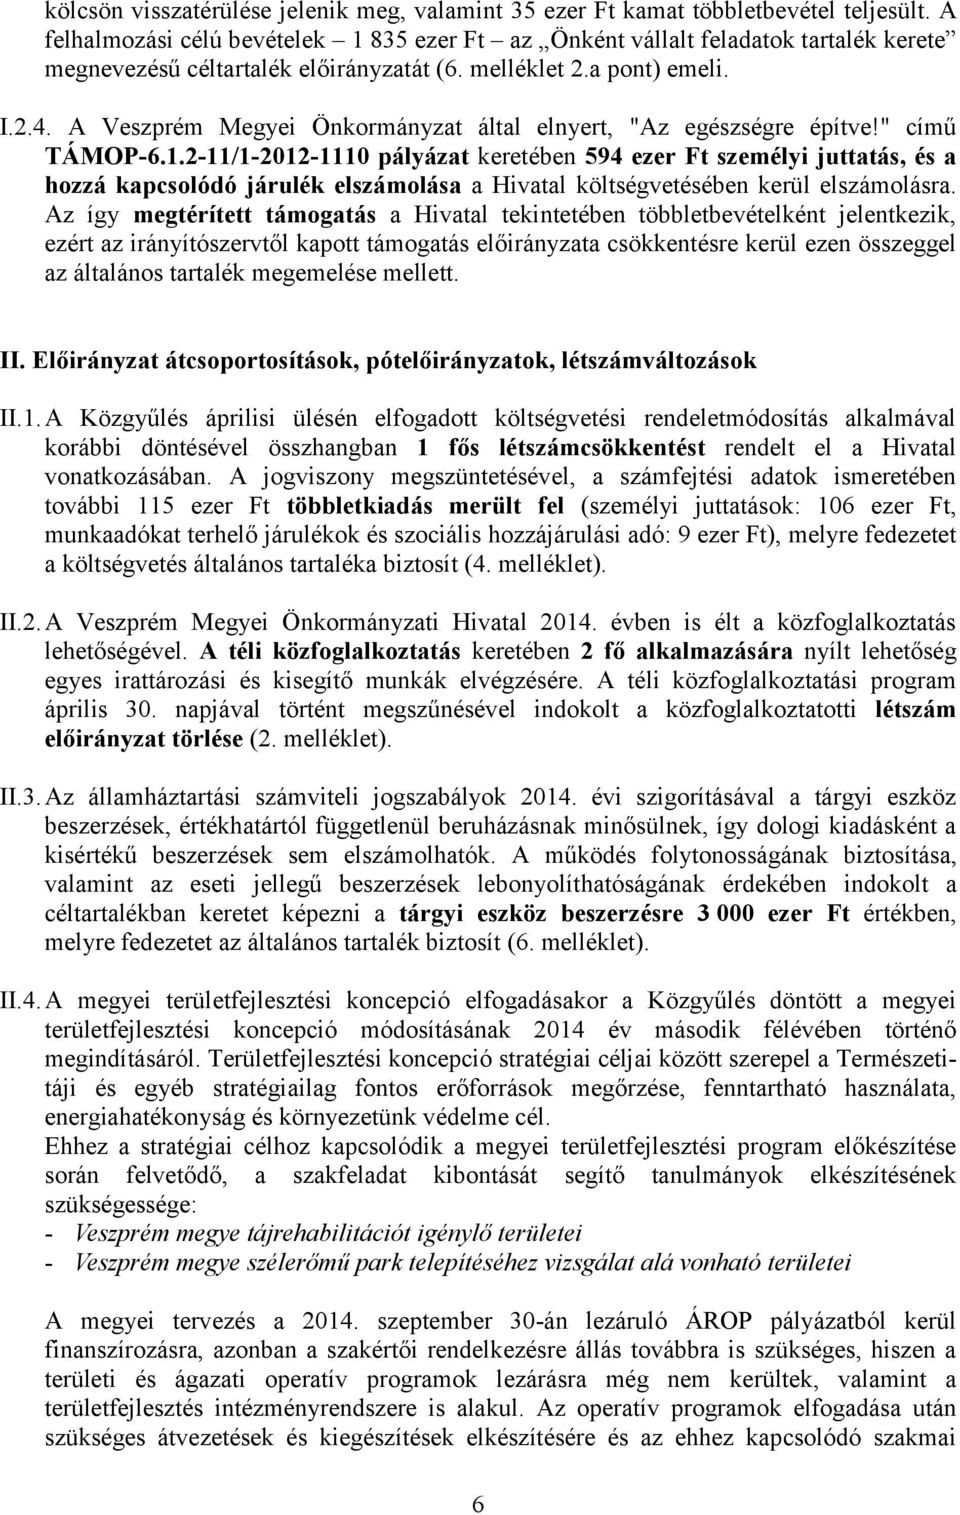 A Veszprém Megyei Önkormányzat által elnyert, "Az egészségre építve!" című TÁMOP-6.1.